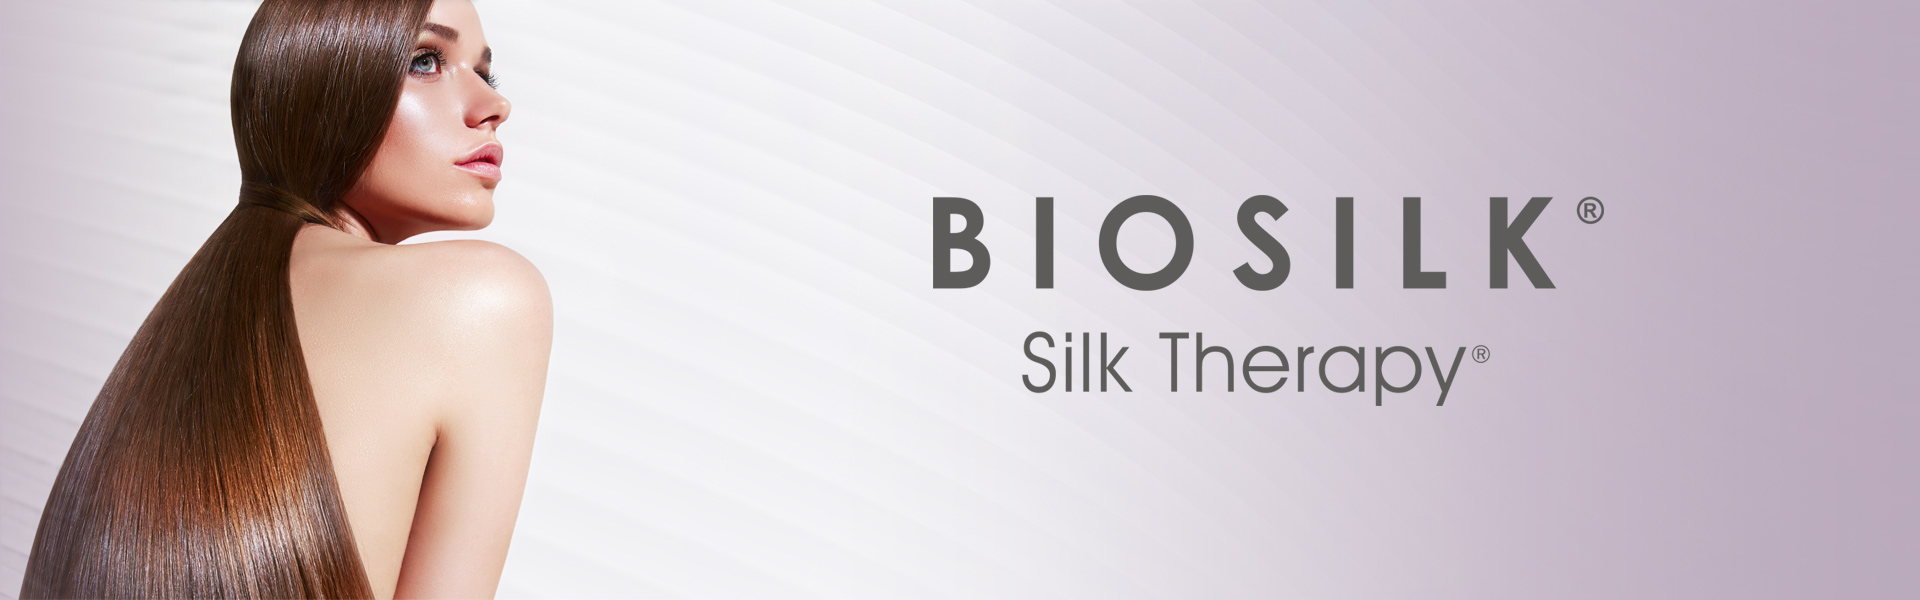 Palauttava shampoo kaikille hiustyypeille BIOSILK Silk Therapy Shampoo 355 ml 